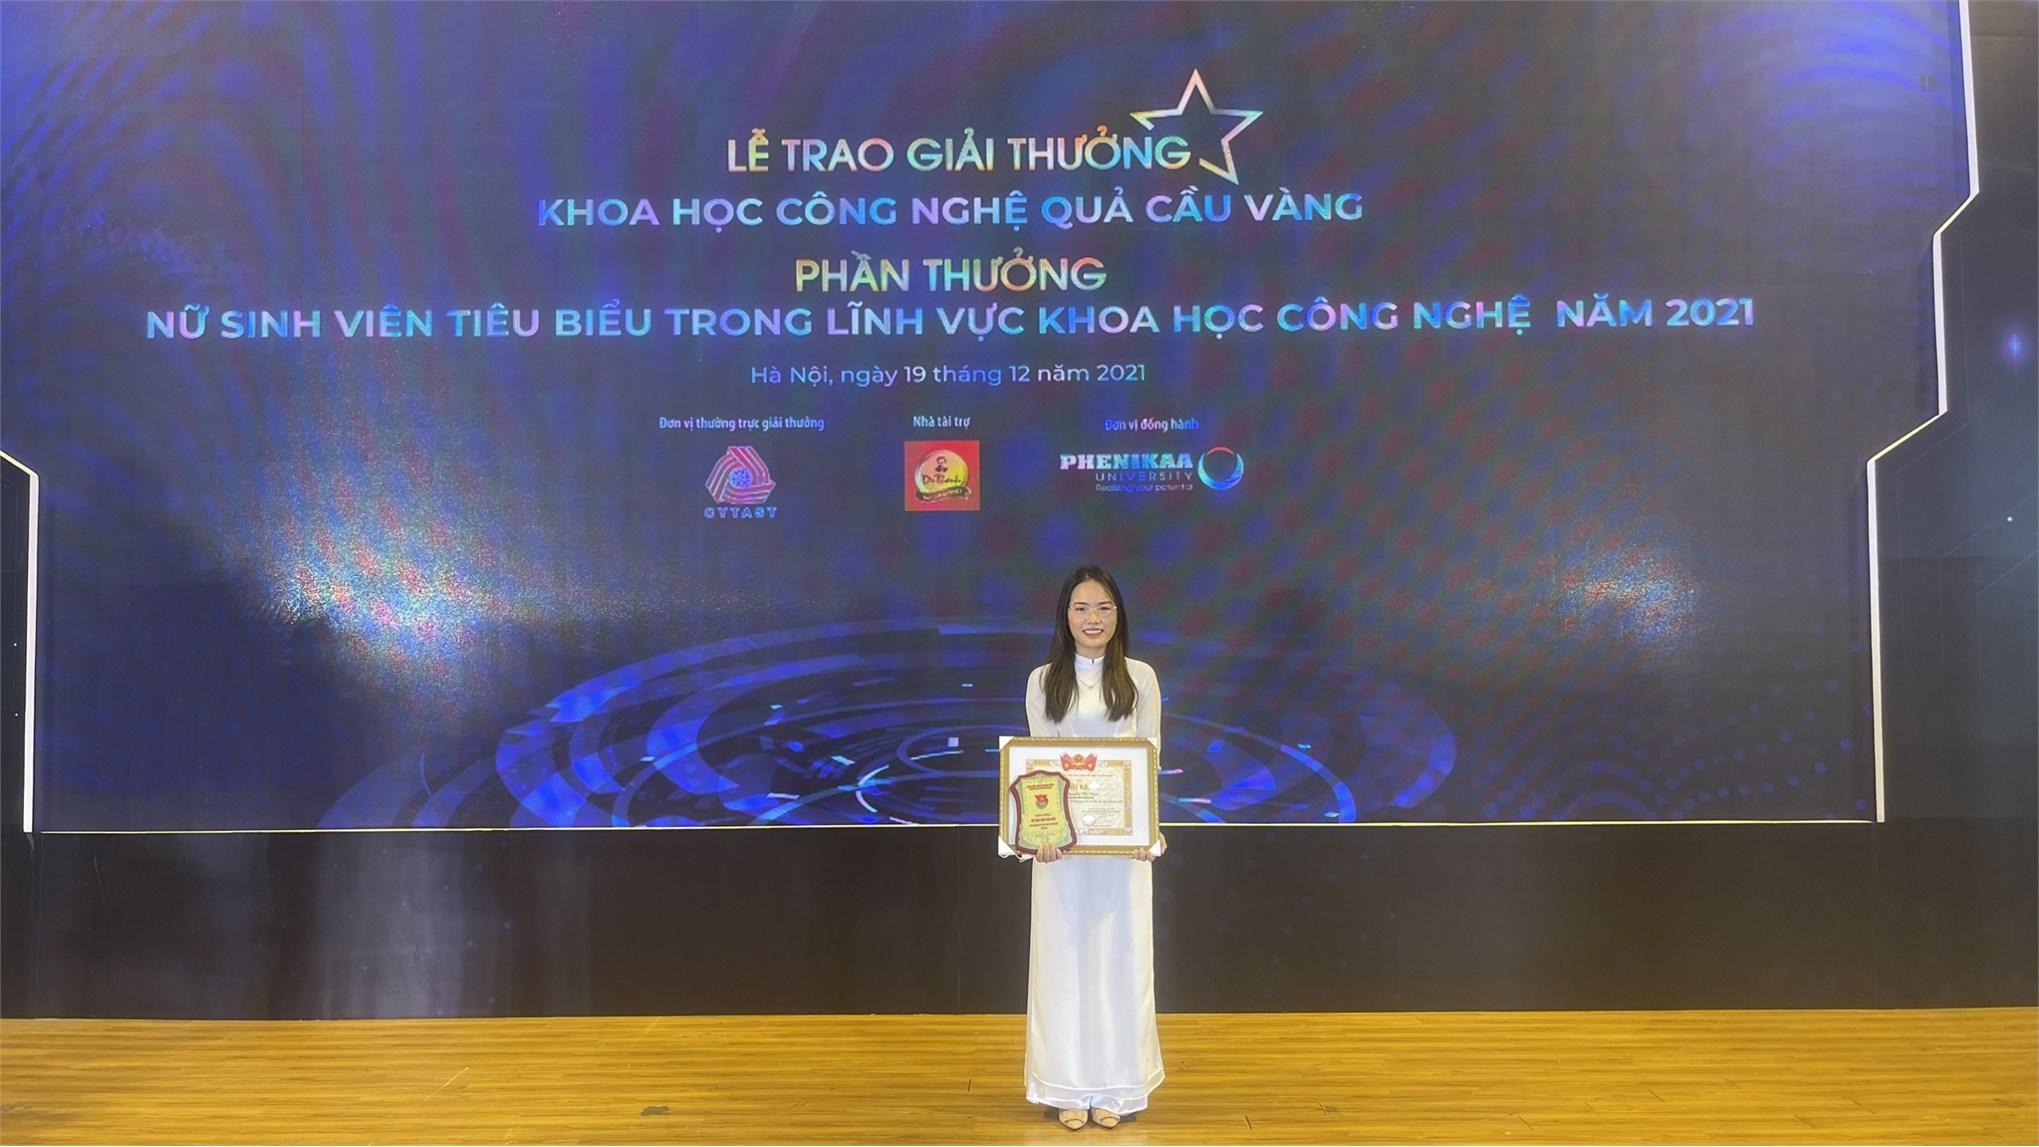 Nguyễn Thị Nga – Nữ sinh viên tiêu biểu trong lĩnh vực khoa học công nghệ năm 2021